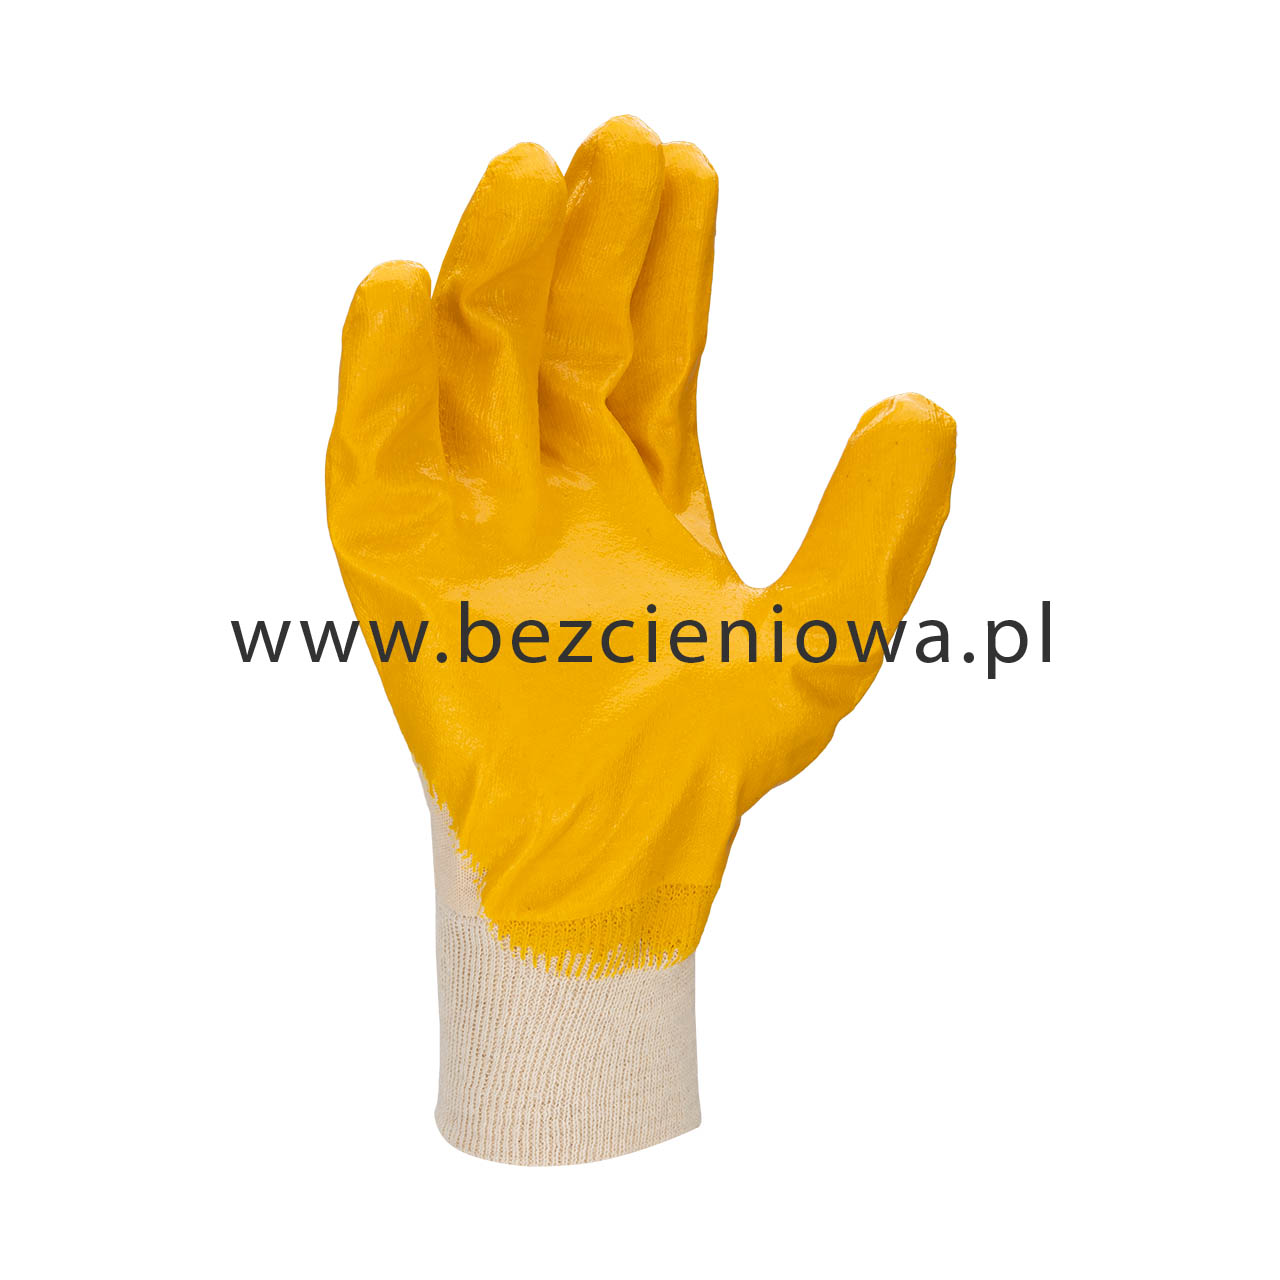 zdjęcia produktowe rękawiczek bhp - bezcieniowa.pl